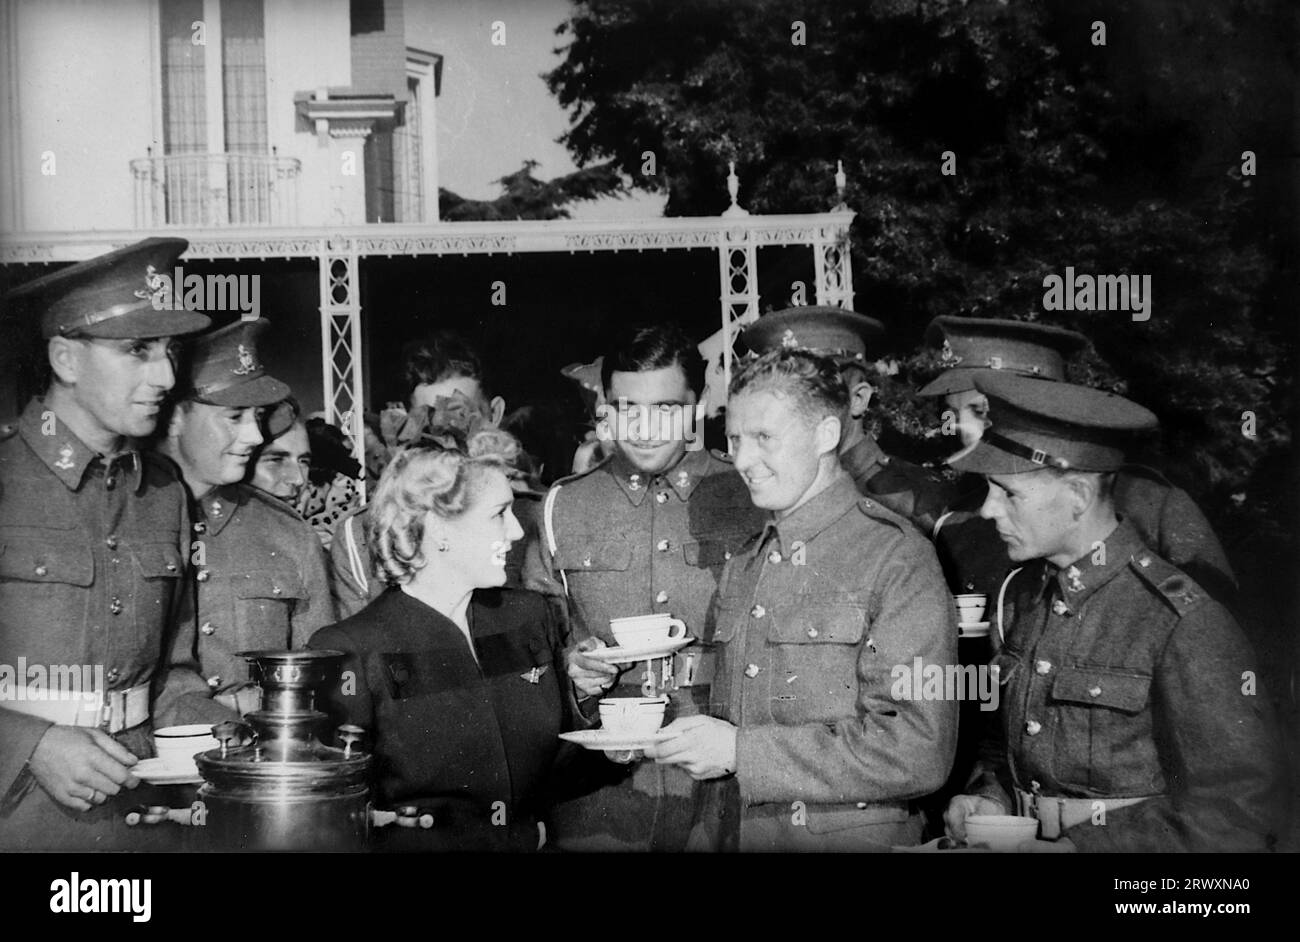 Mary Pickford verteilt in ihrem Haus in Hollywood Teetassen. Seltenes Foto: Aus einer Sammlung eines unbekannten britischen Soldaten über die No. 1 Composite Demonstration, AA Battery, Tour durch die USA, vom 11. Juli 1943. Dies ist eines von mehr als hundert Bildern in der Sammlung, die im Durchschnitt etwa 4 x 3 Zoll groß waren. Stockfoto